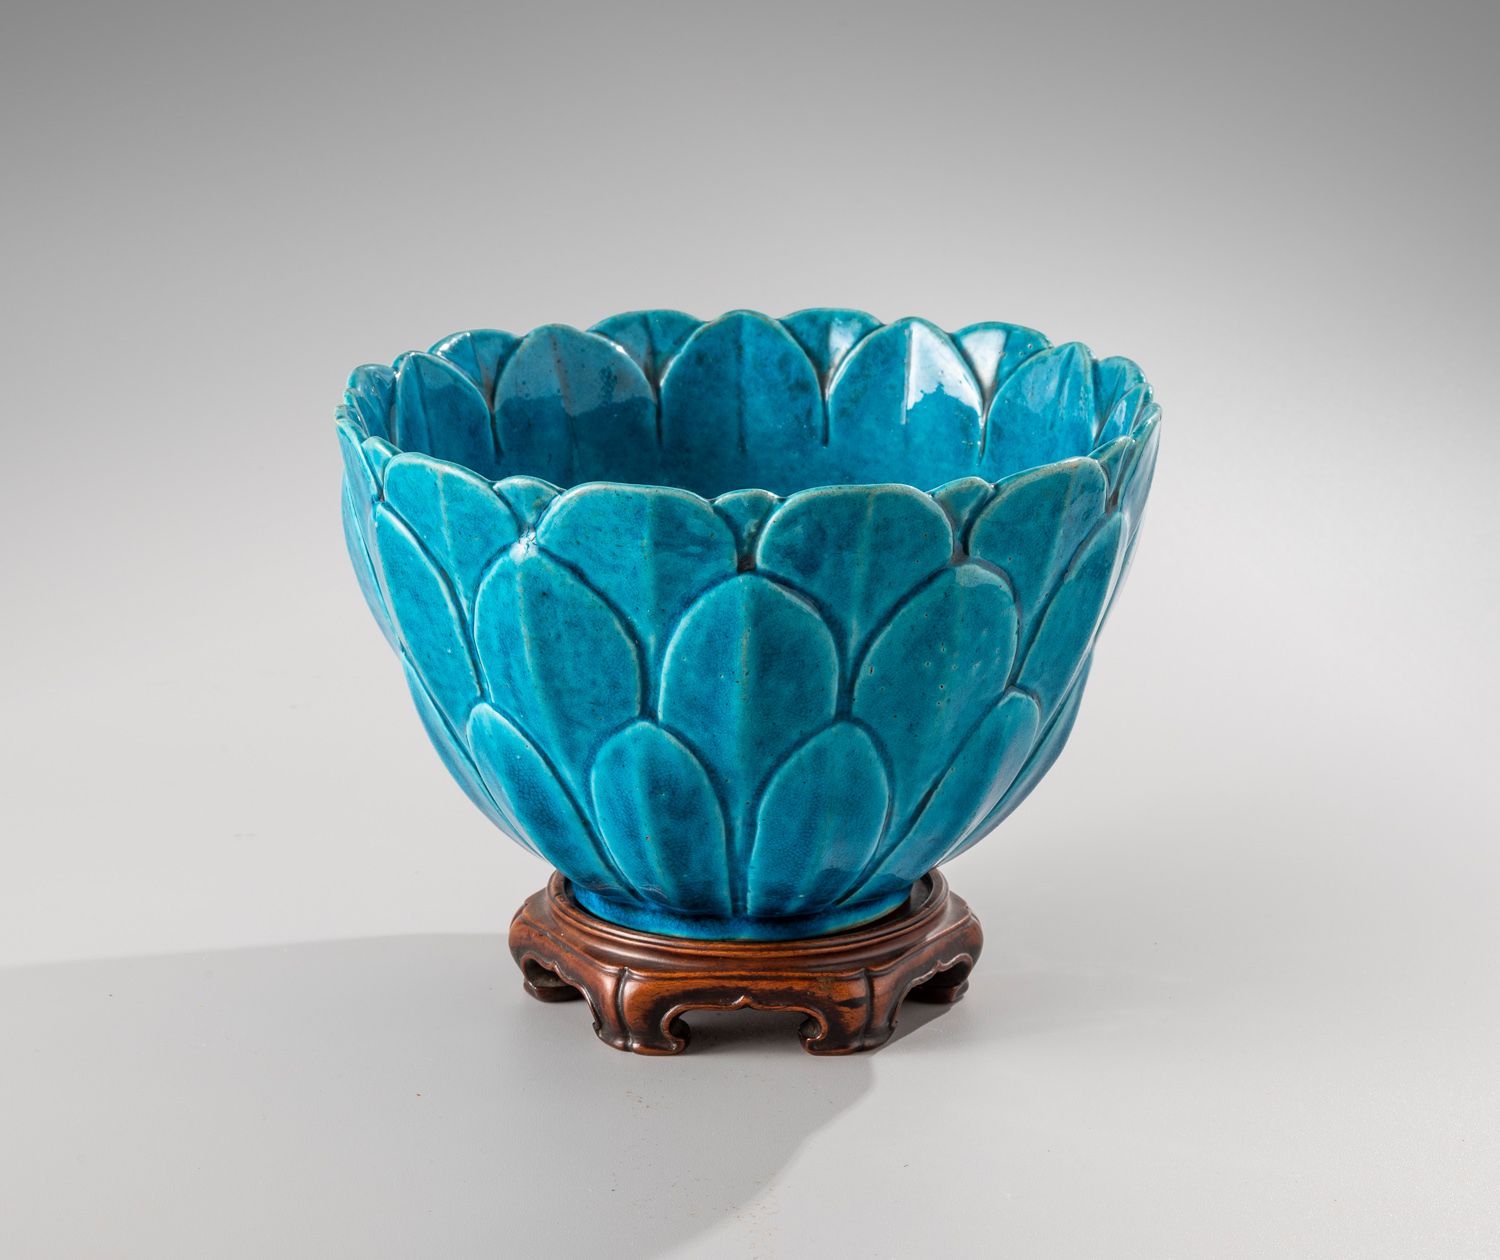 Null CHINA, siglo XVIII

Un cuenco de cerámica esmaltada de color turquesa con f&hellip;